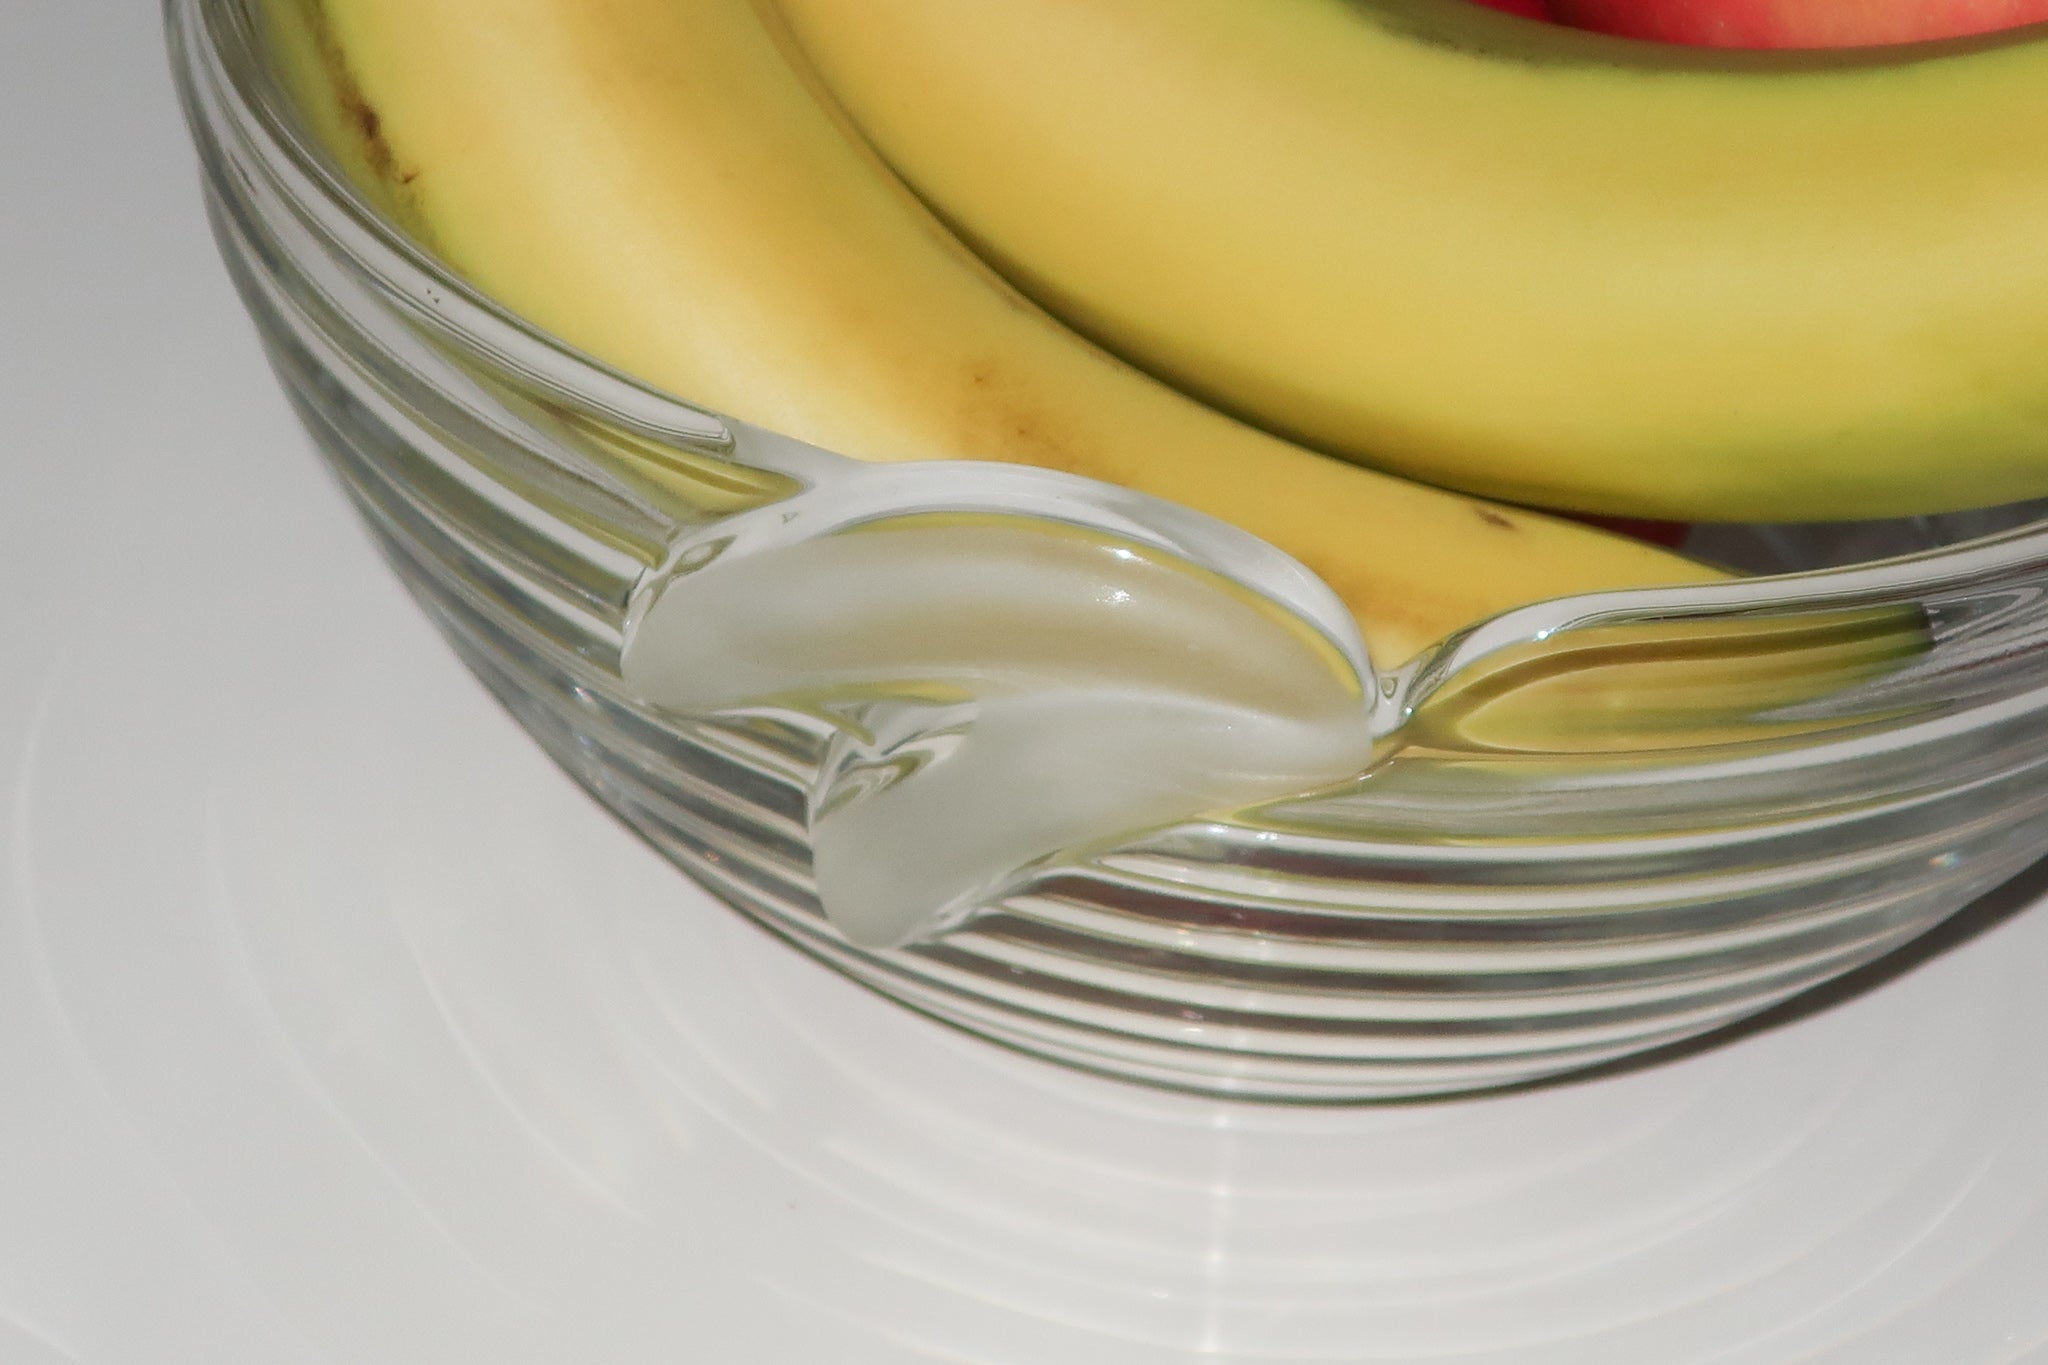 Banana Bowl